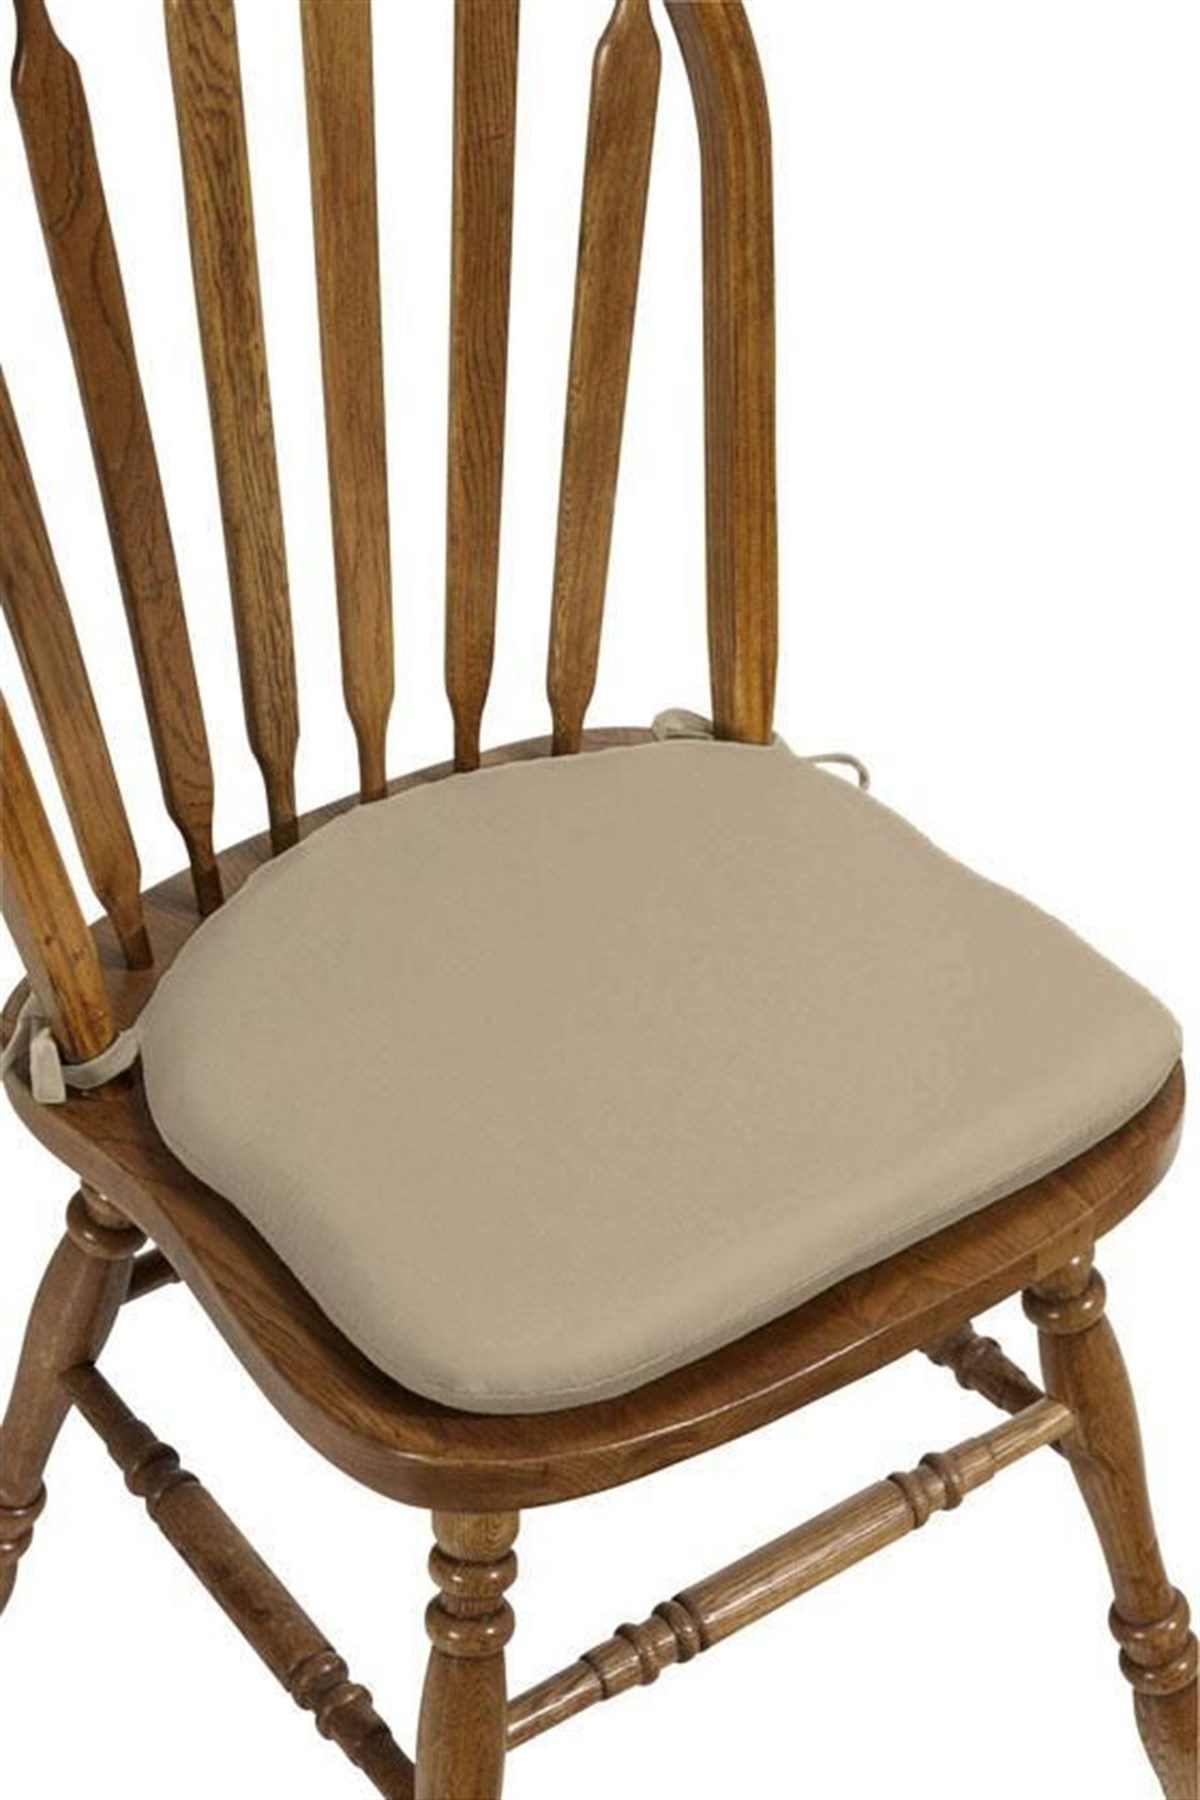 Oval Pamuklu Sandalye Minderi - Brg Minder | Türkiye'nin En Büyük Minder  Üreticisi